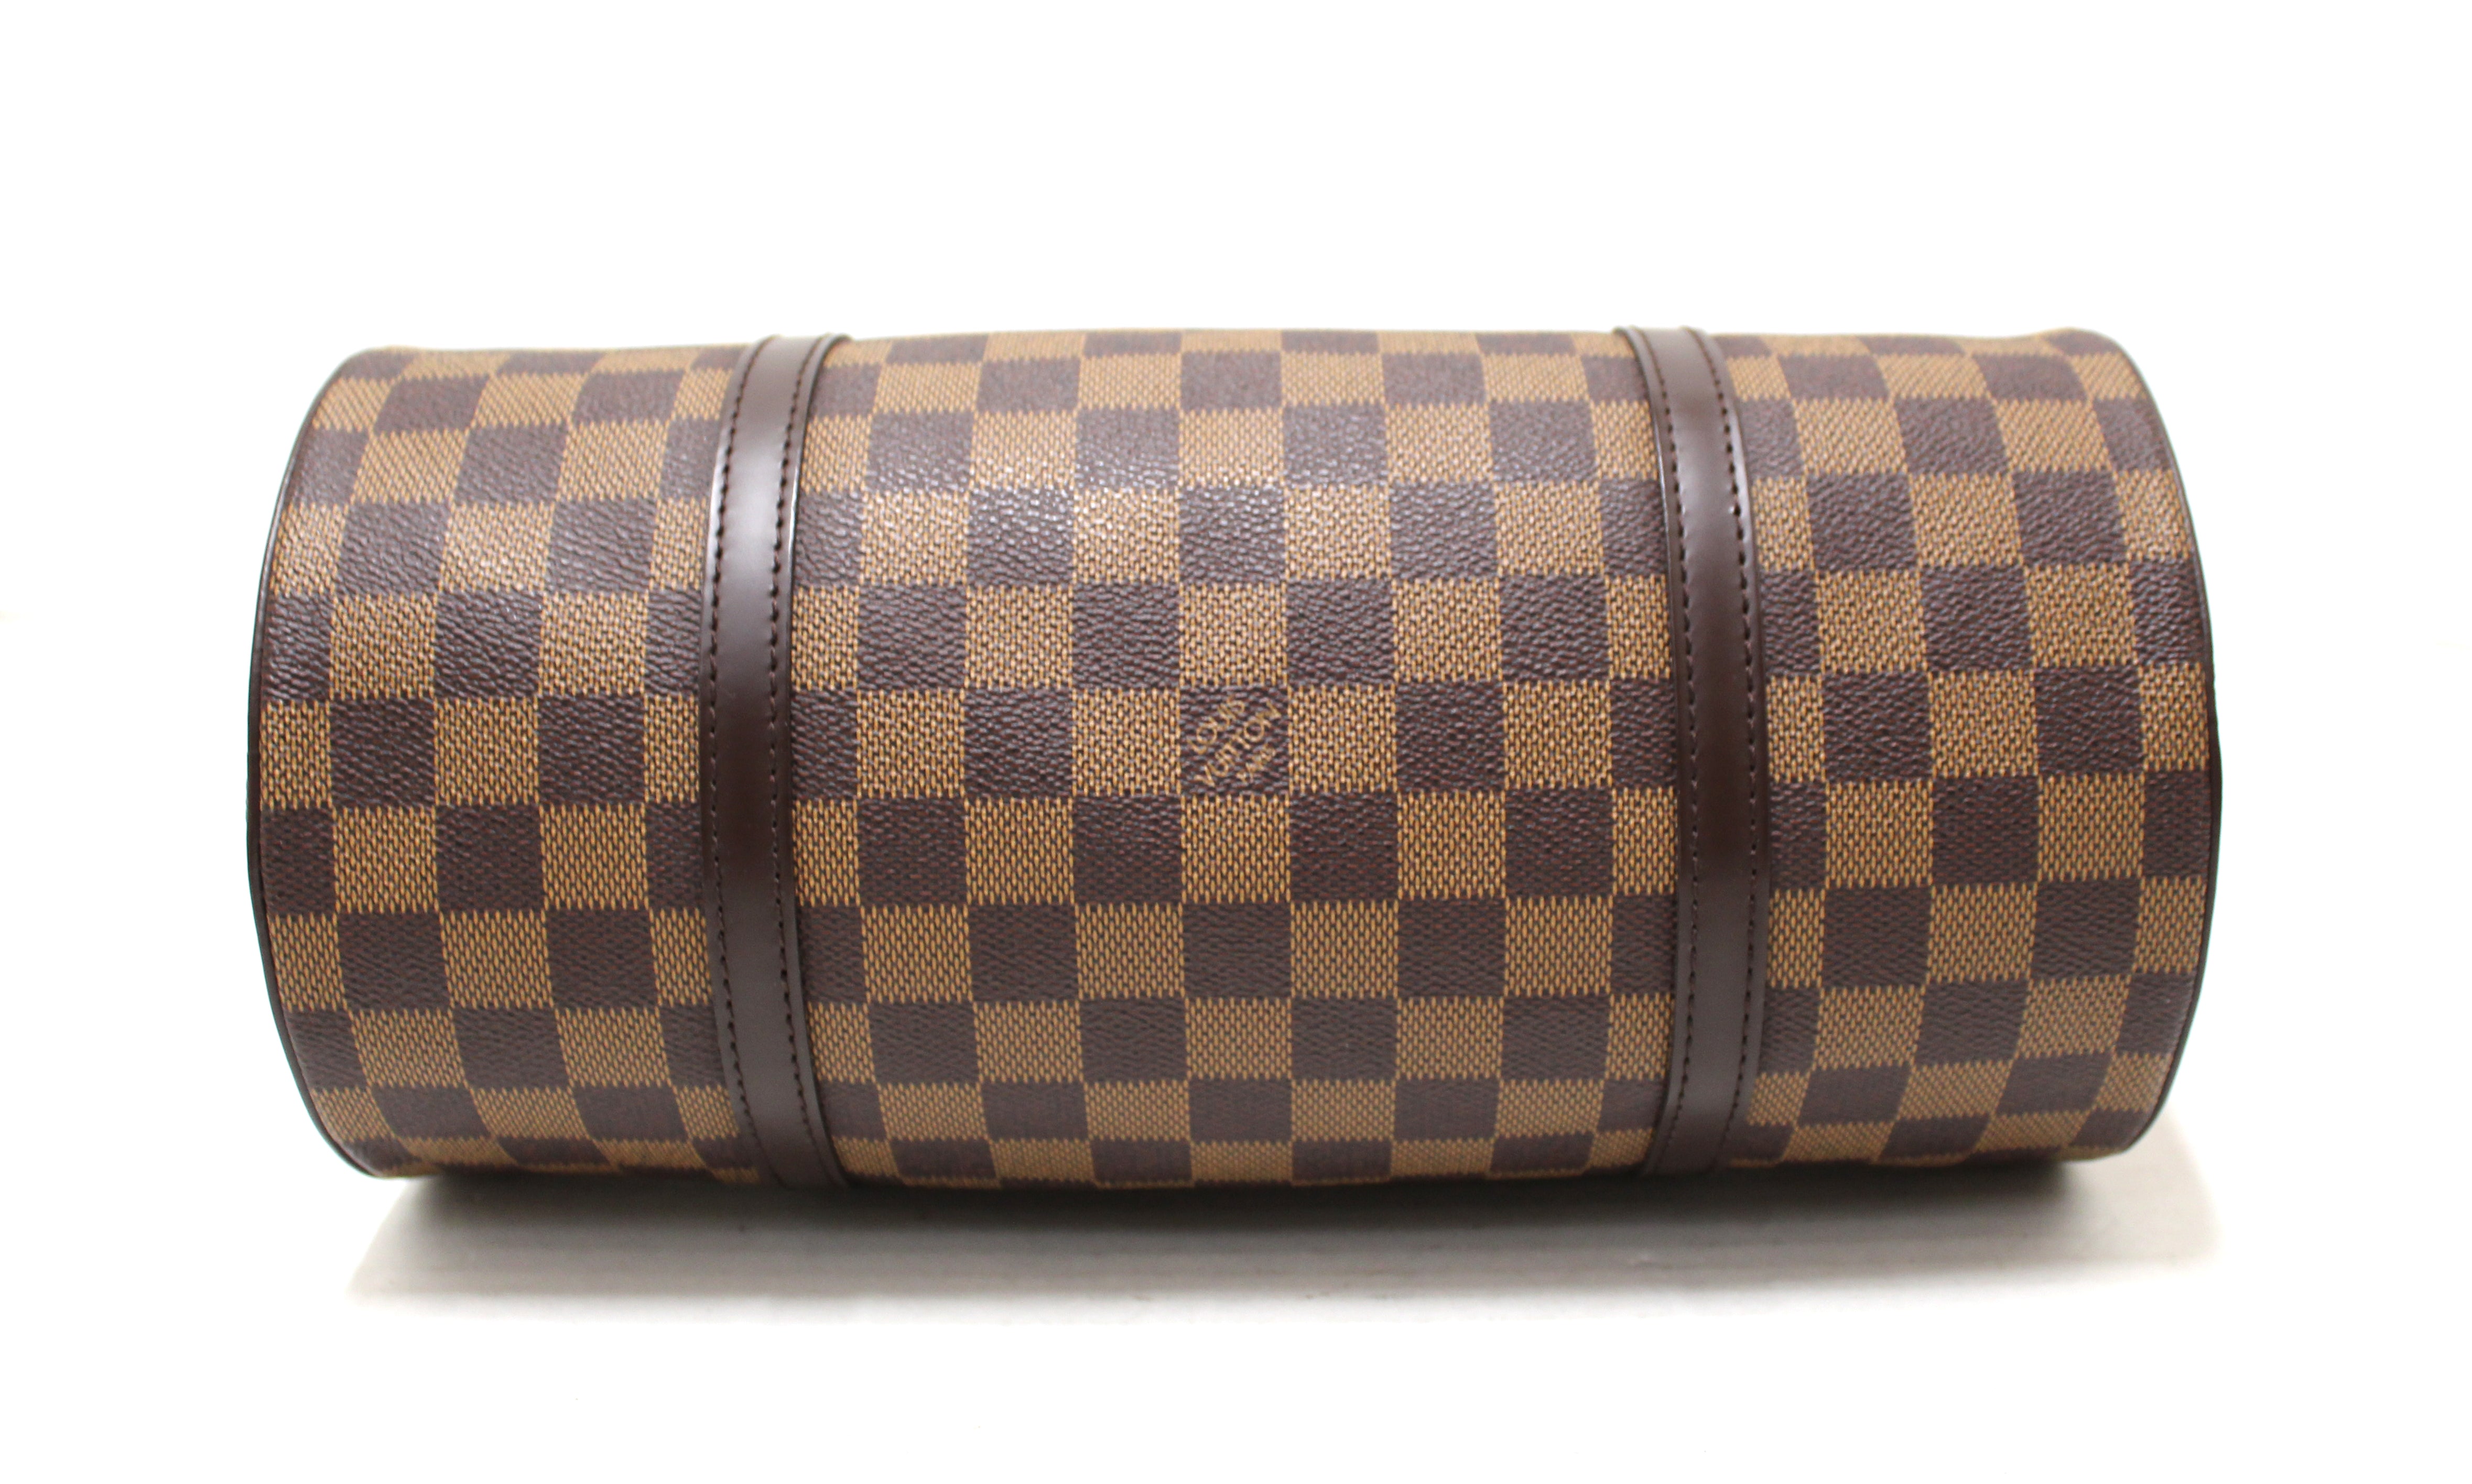 Authentic Louis Vuitton Damier Ebene Papillon 30 Handbag